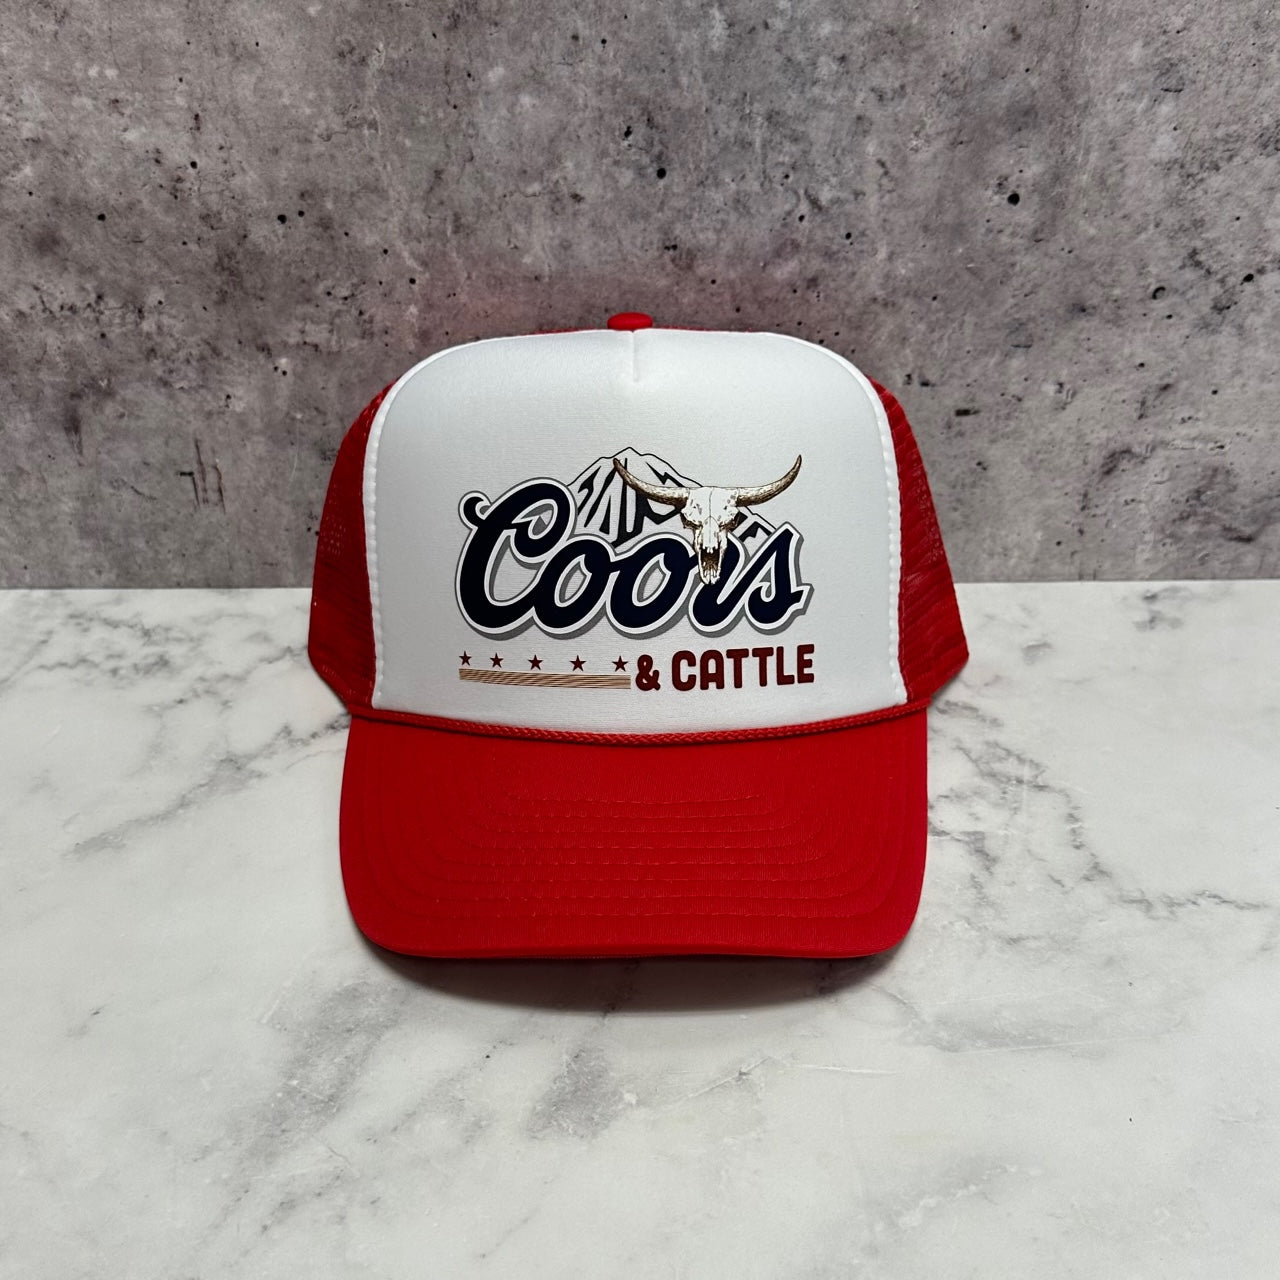 Coors & Cattle Trucker Hat